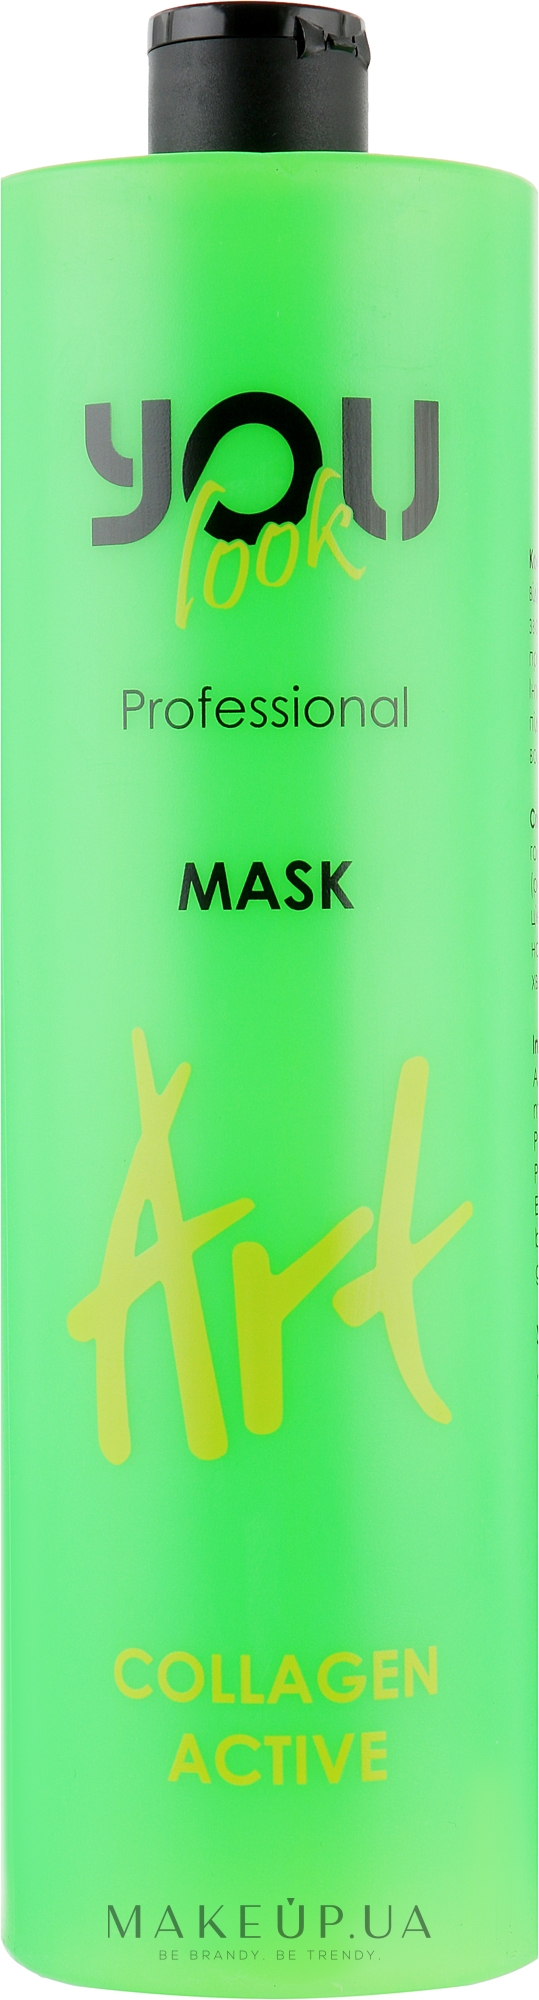 Маска для поврежденных волос с коллагеном - You Look Professional Art Collagen Active Mask — фото 1000ml